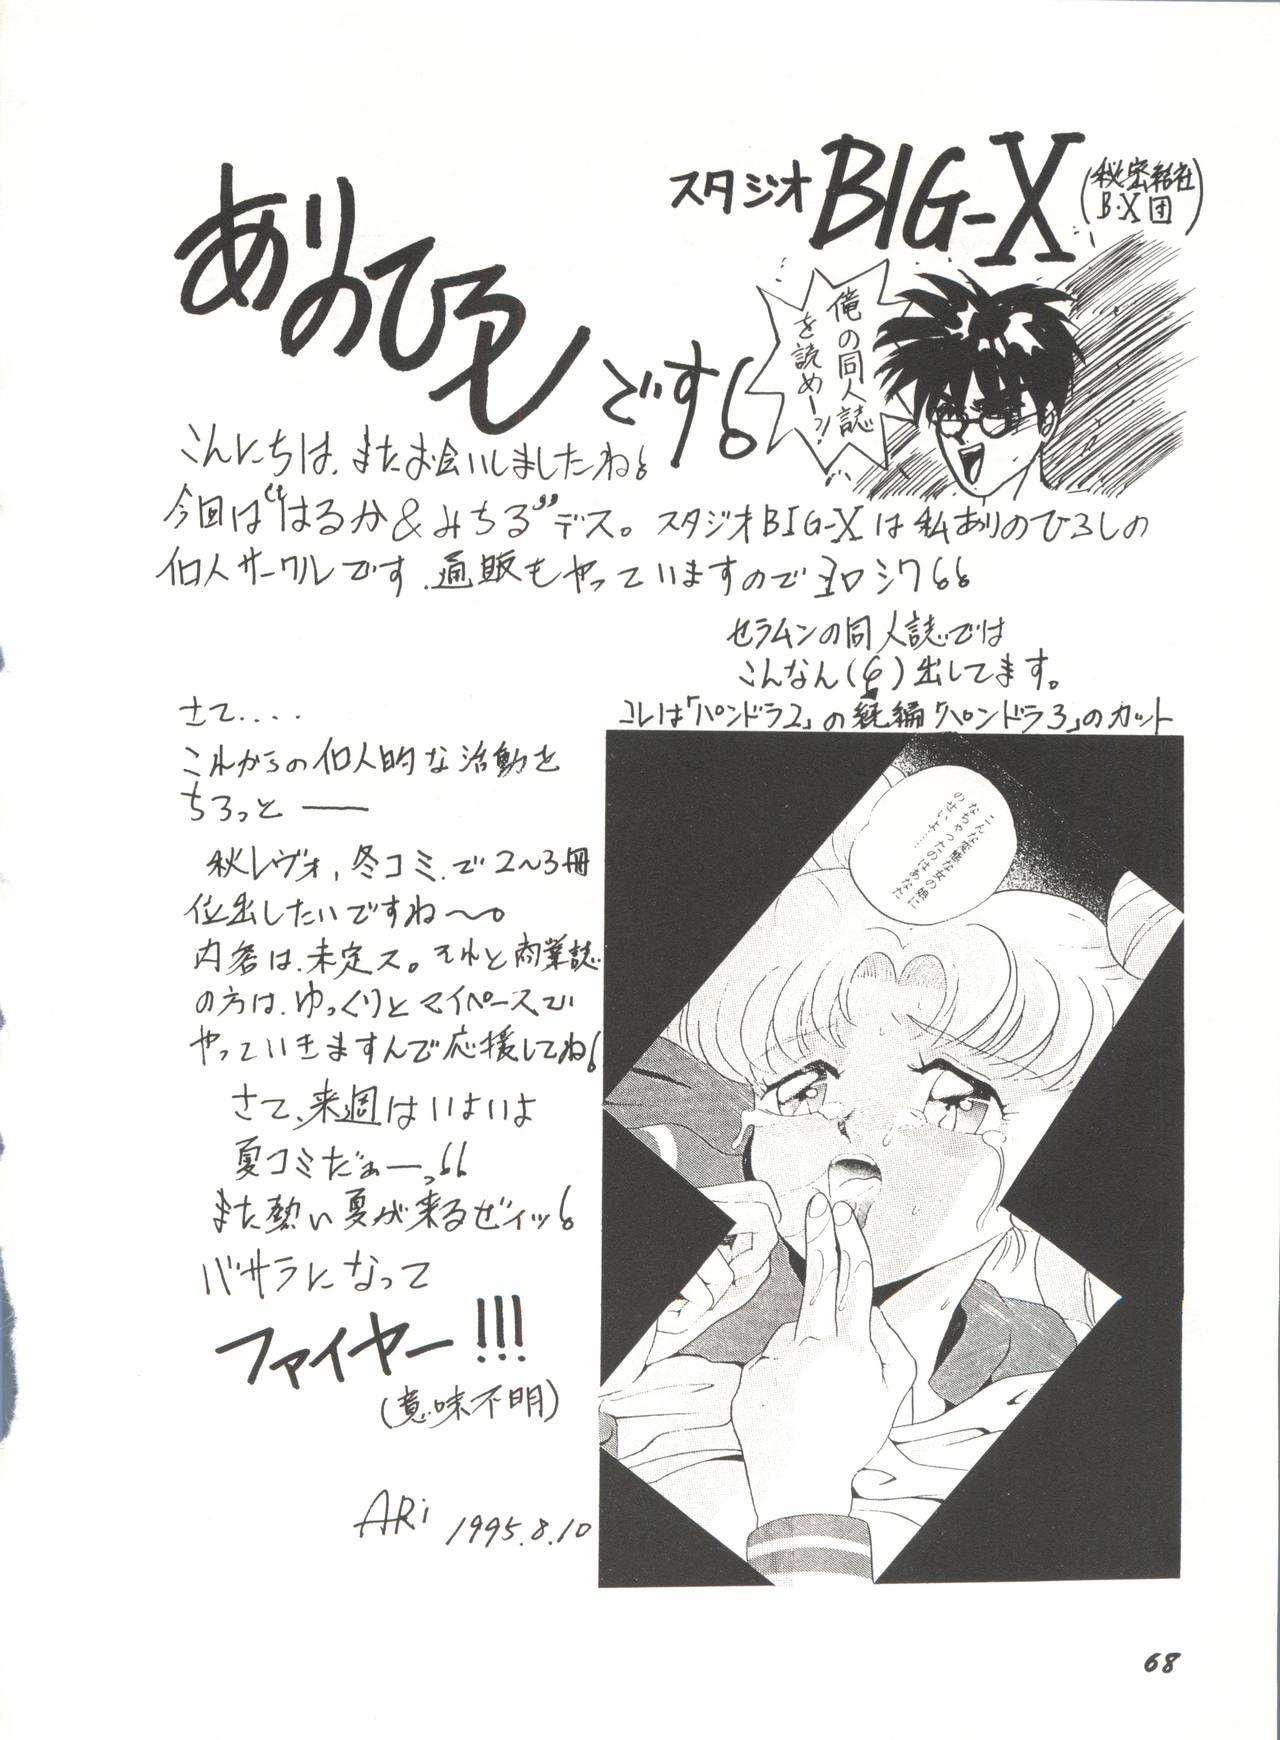 Bishoujo Doujinshi Anthology 16 - Moon Paradise 10 Tsuki no Rakuen 73